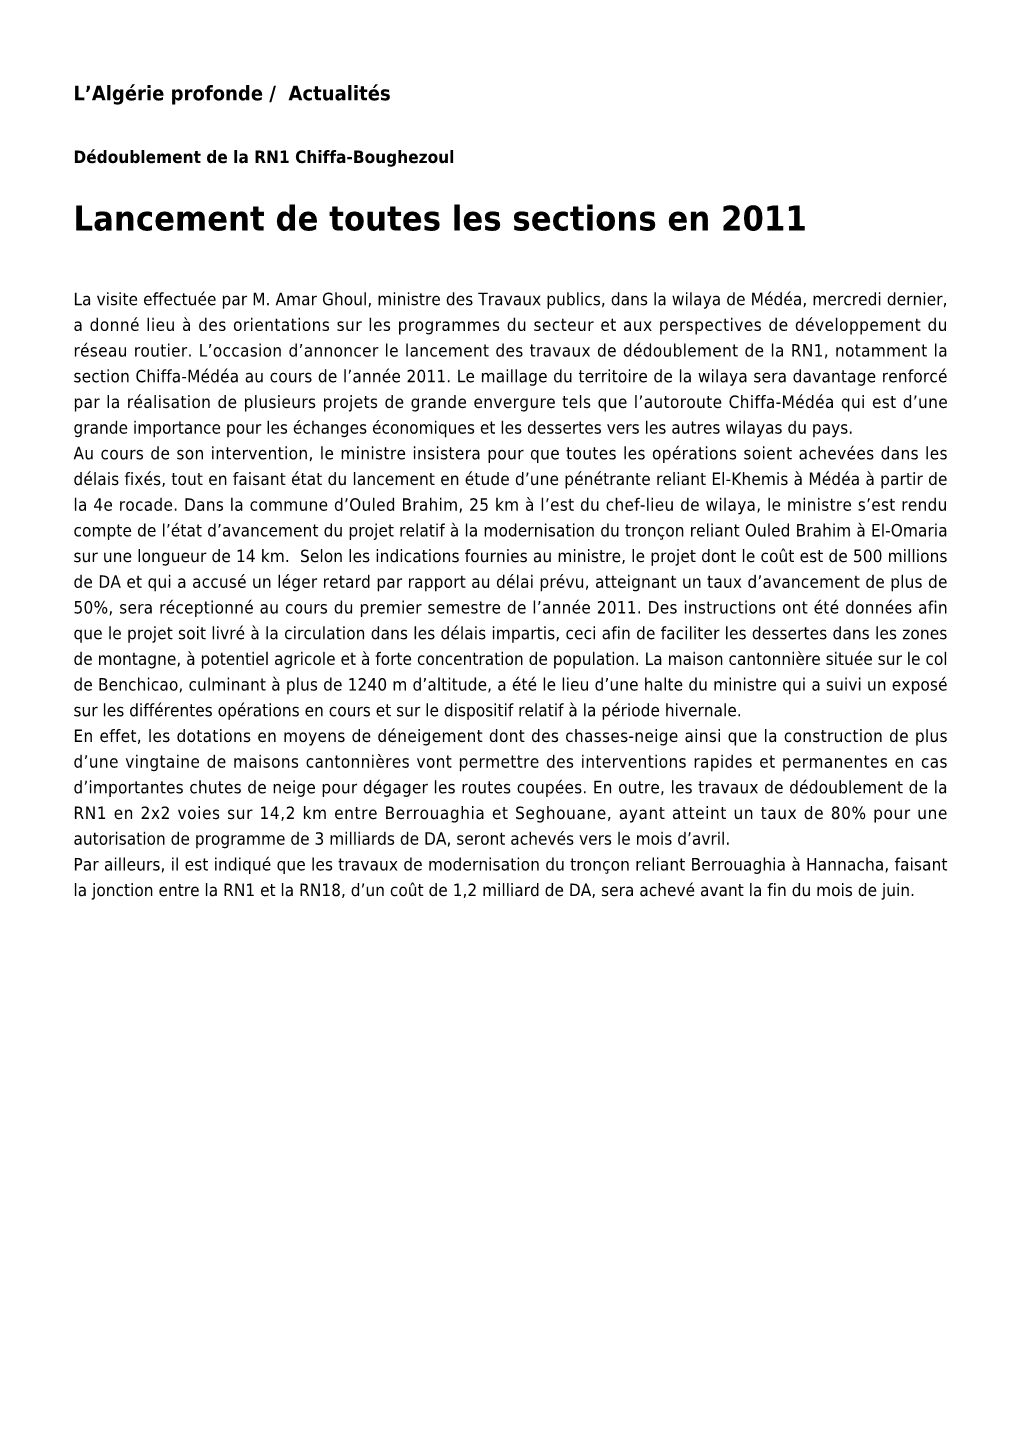 Lancement De Toutes Les Sections En 2011: Toute L'actualité Sur Liberte